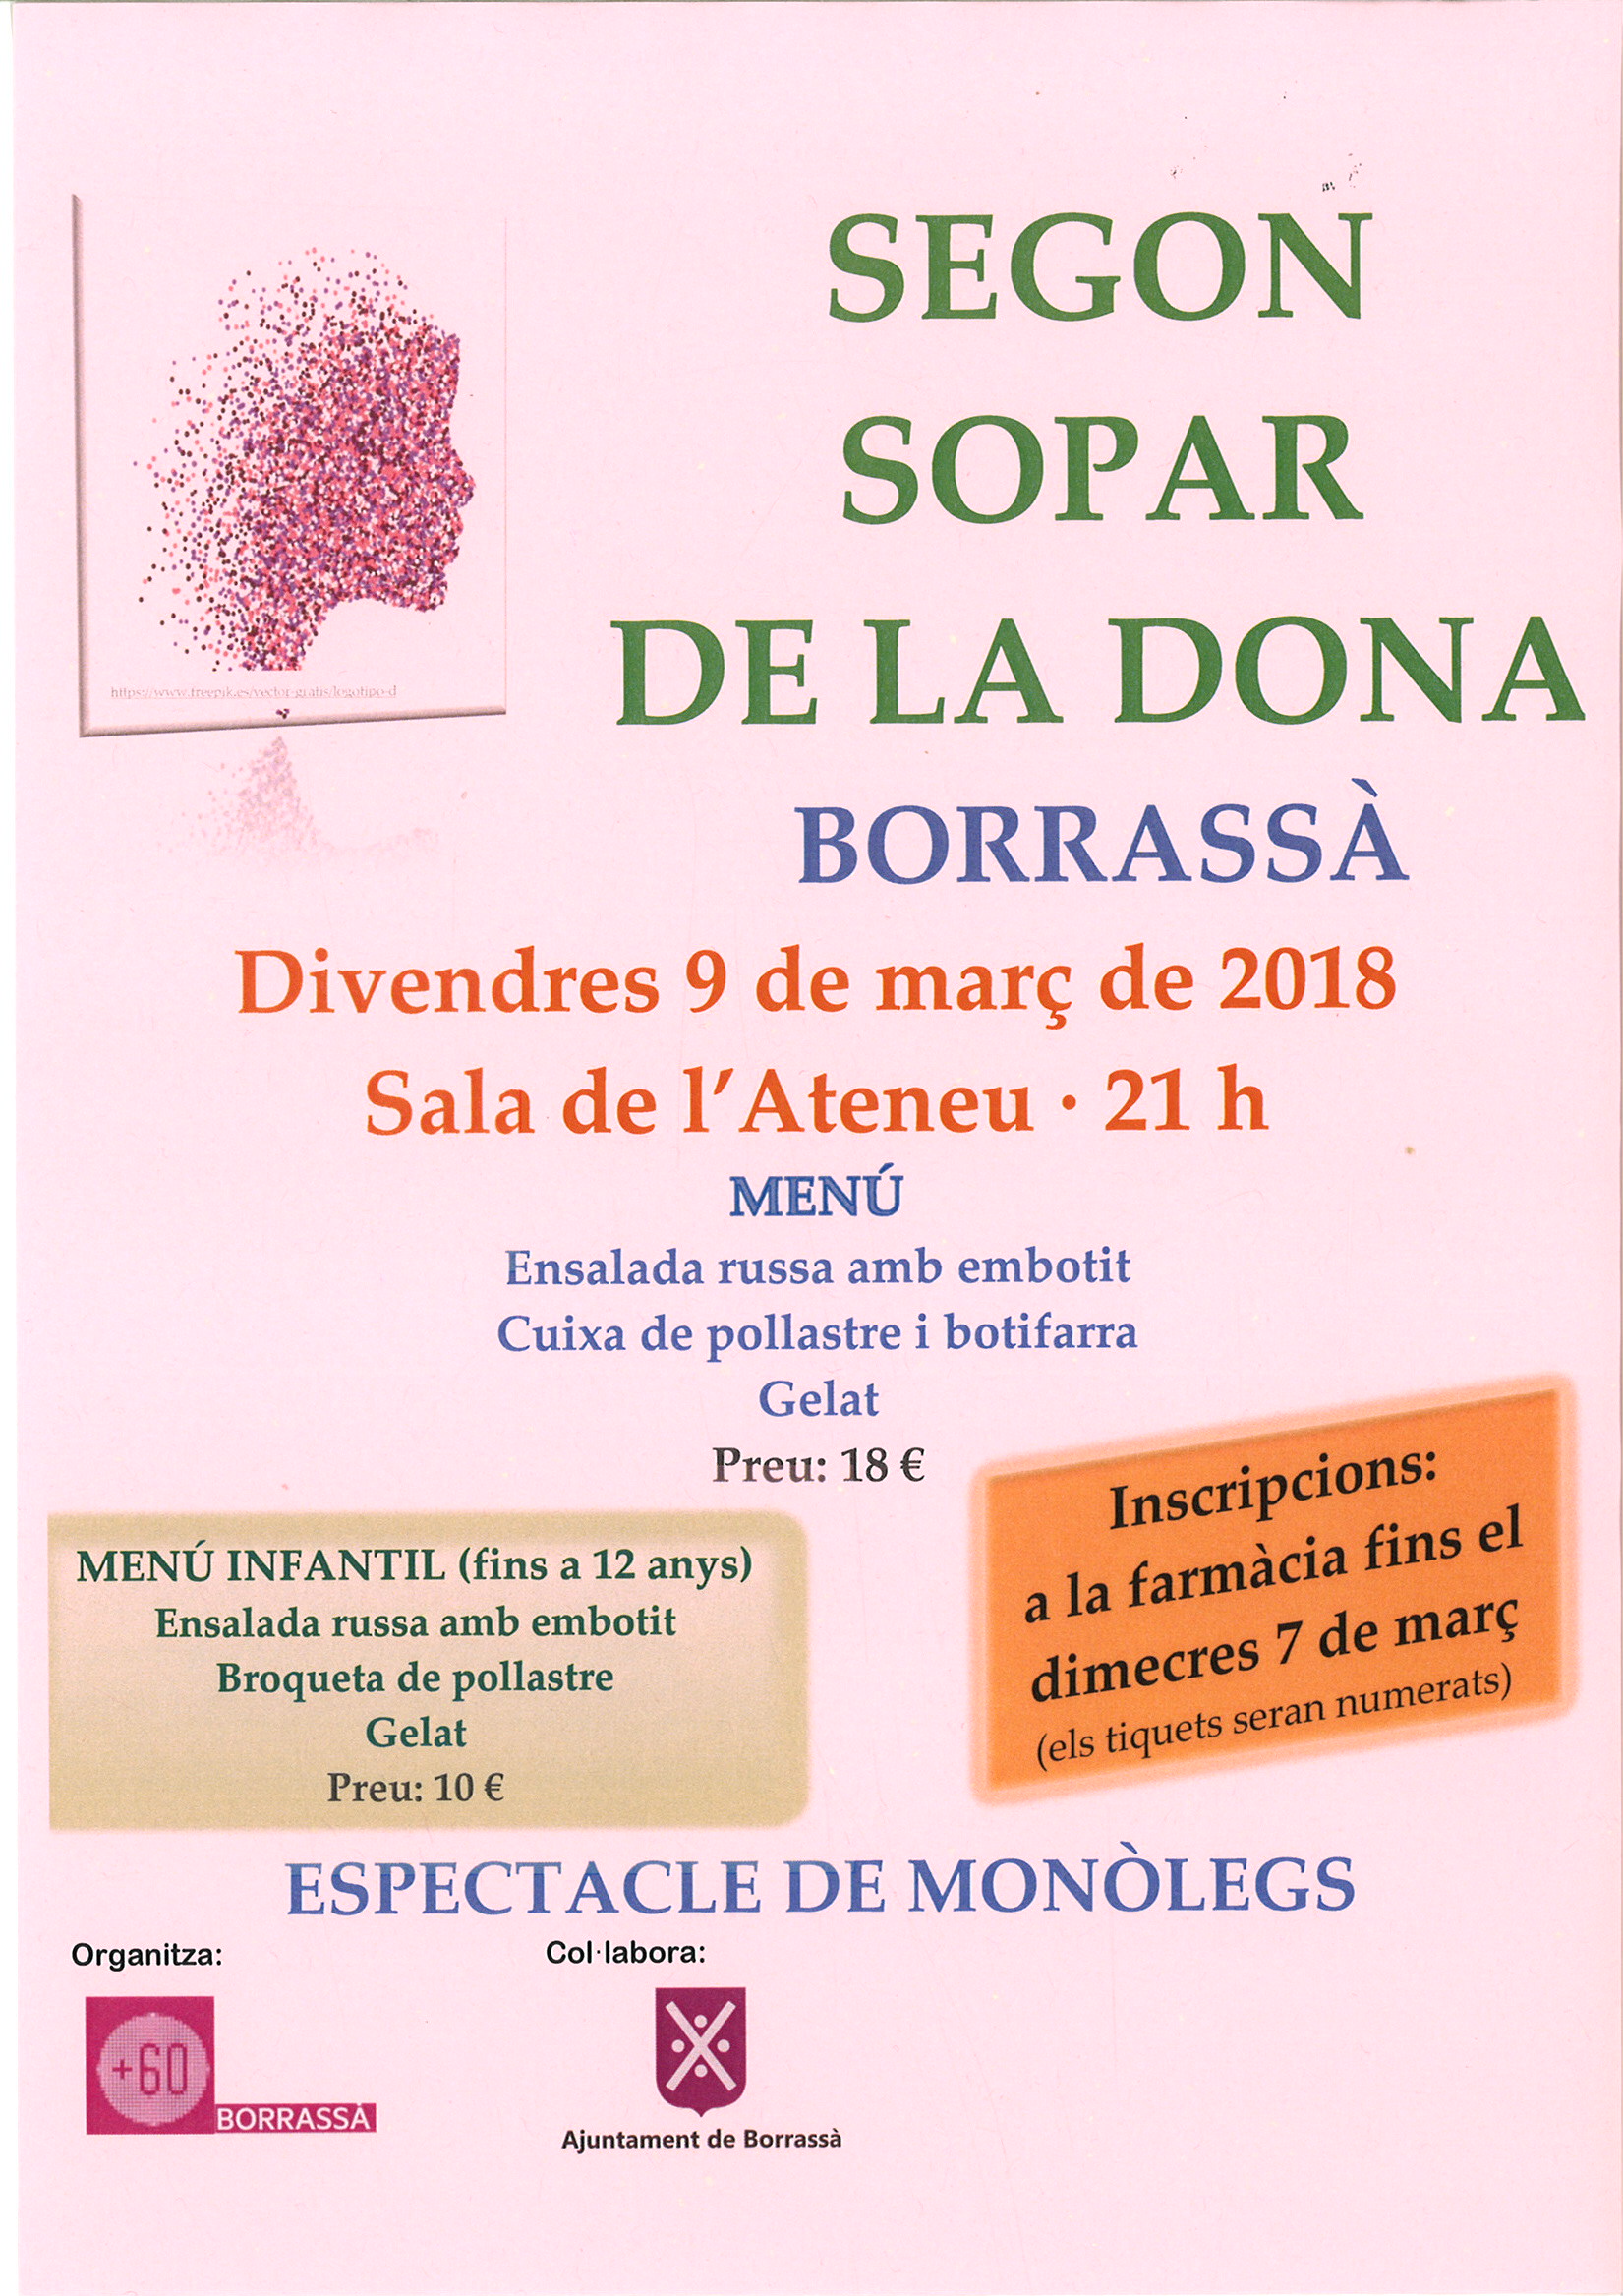 El col·lectiu + 60 de Borrassà organitza el Segon Sopar de la dona que es farà el divendres 9 de març, a la Sala de l'Ateneu.